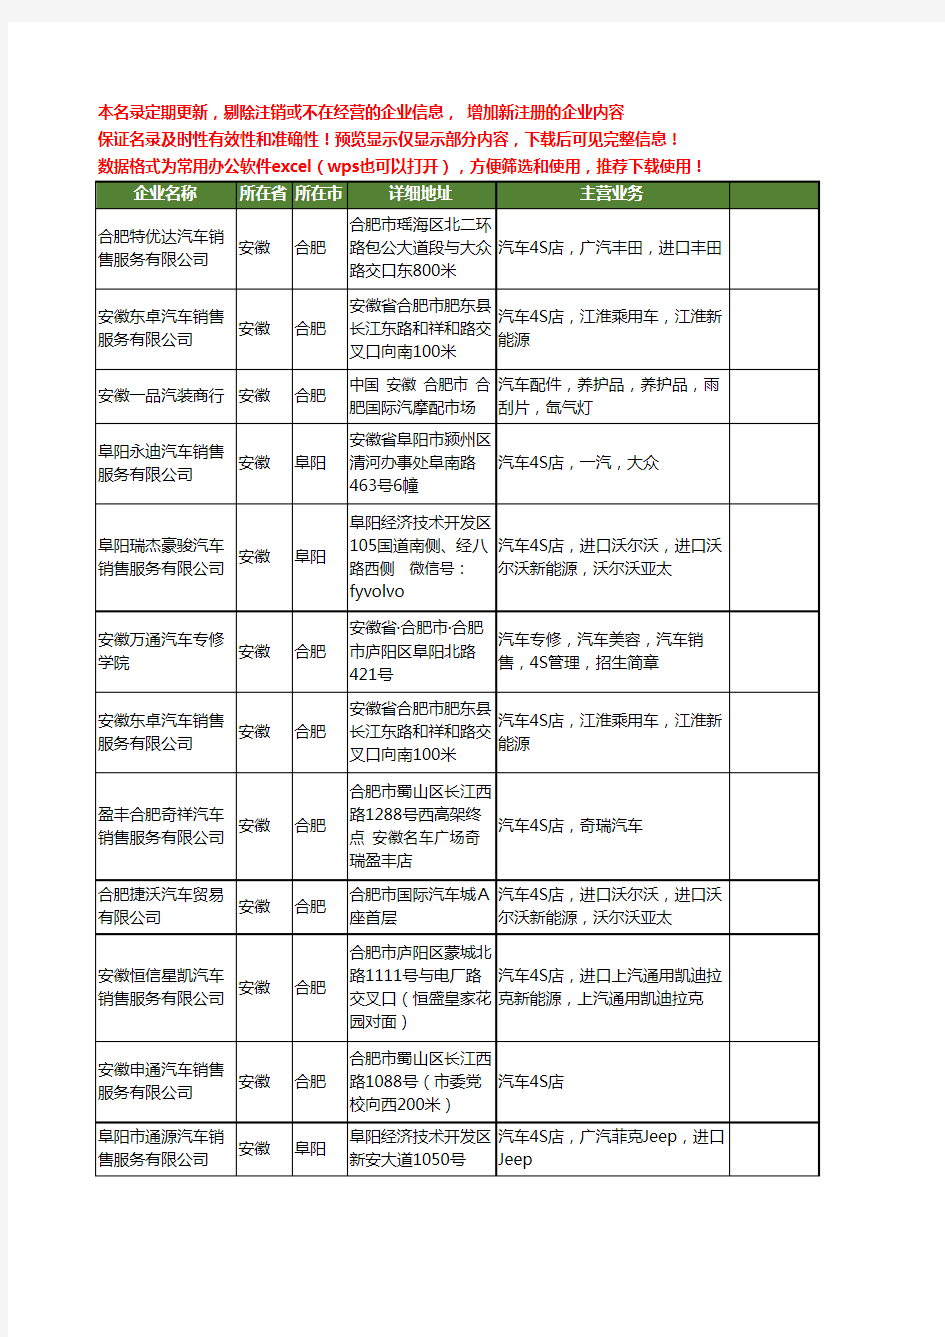 新版安徽省汽车4S工商企业公司商家名录名单联系方式大全16家